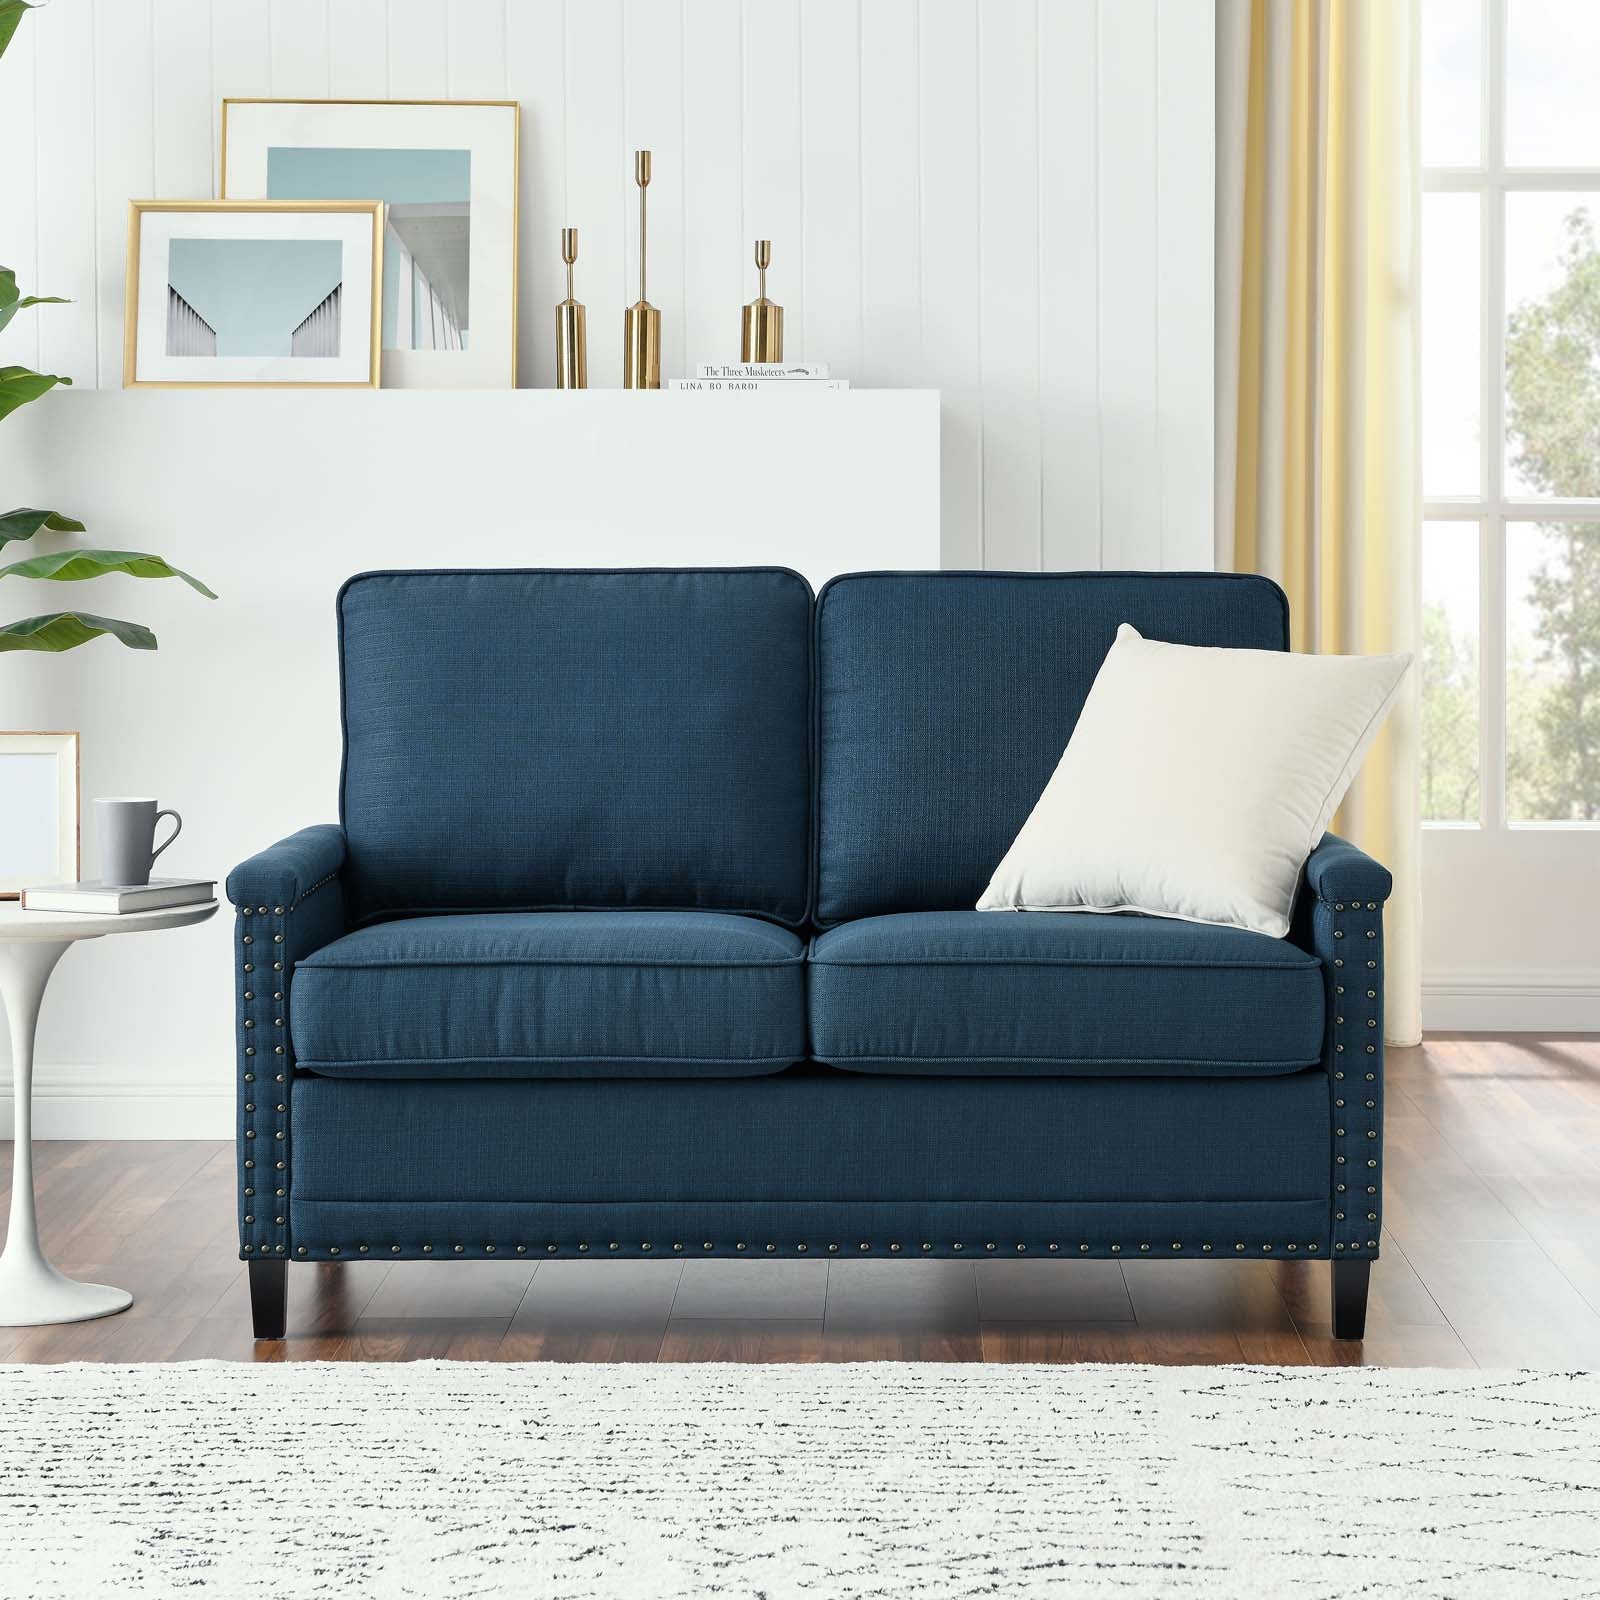 Ashton Upholstered Fabric Loveseat - East Shore Modern Home Furnishings